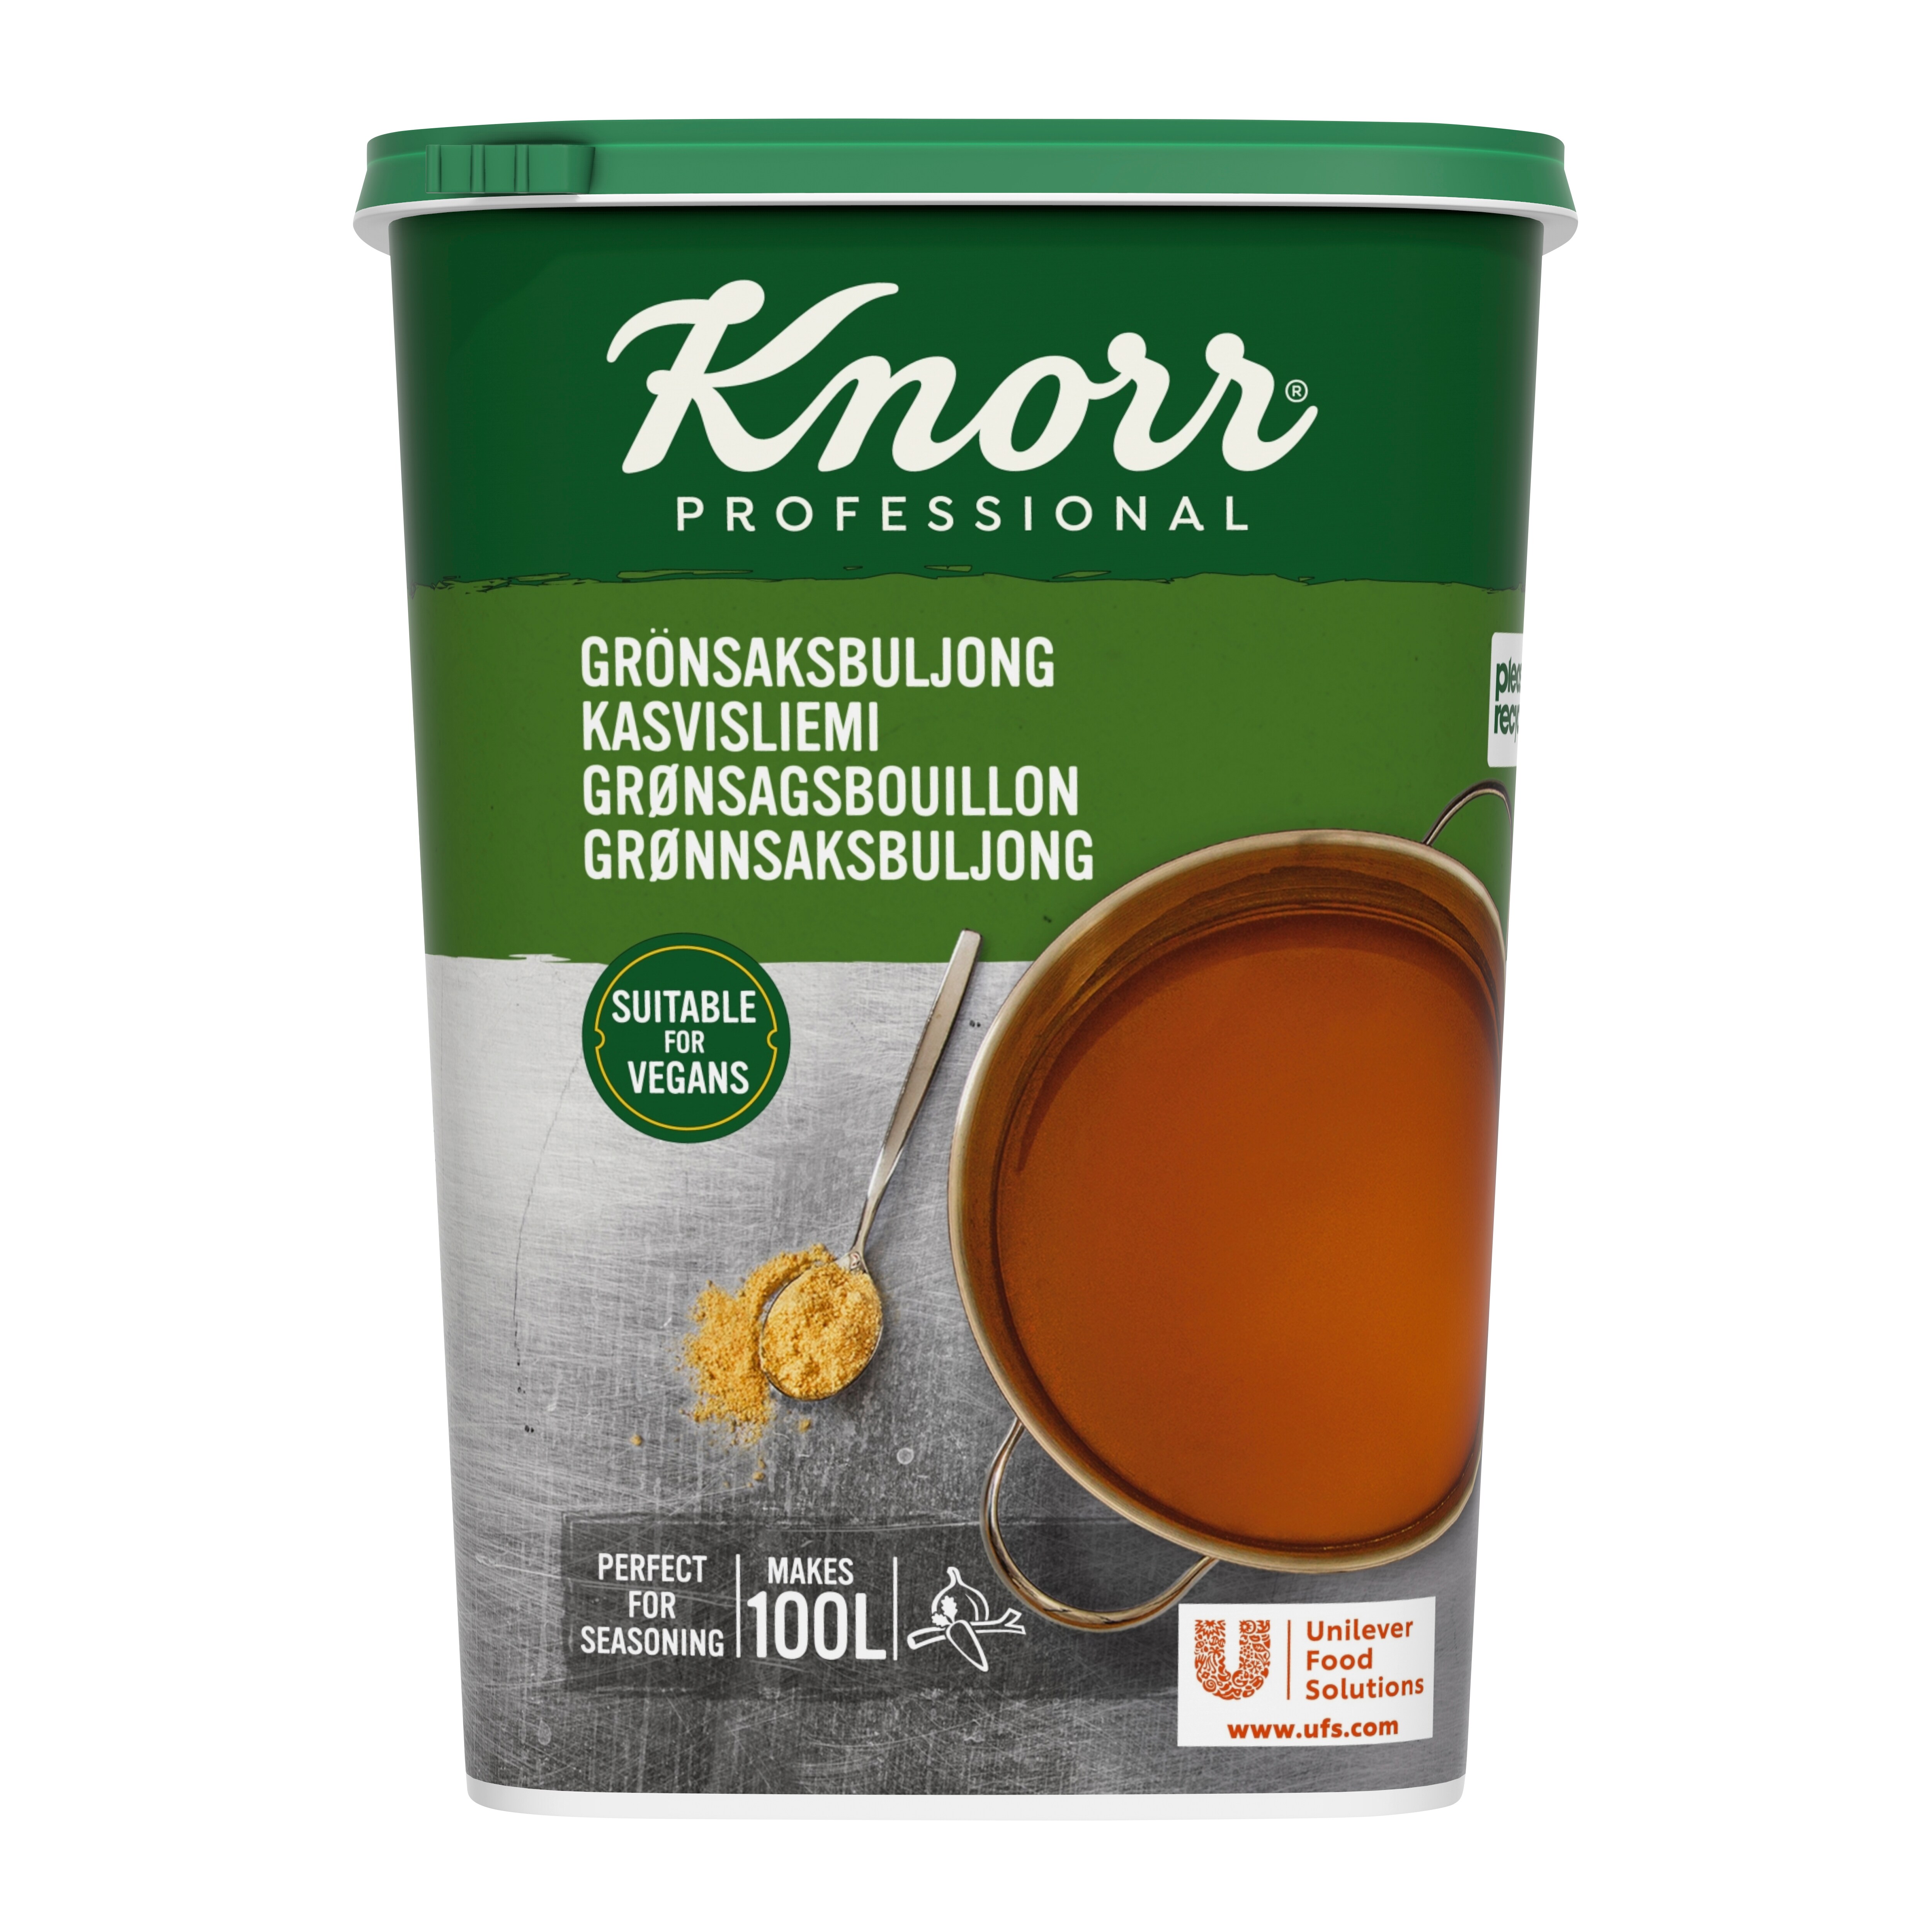 Knorr Grønsagsbouillon, granulat 1,5 kg / 100 l - 